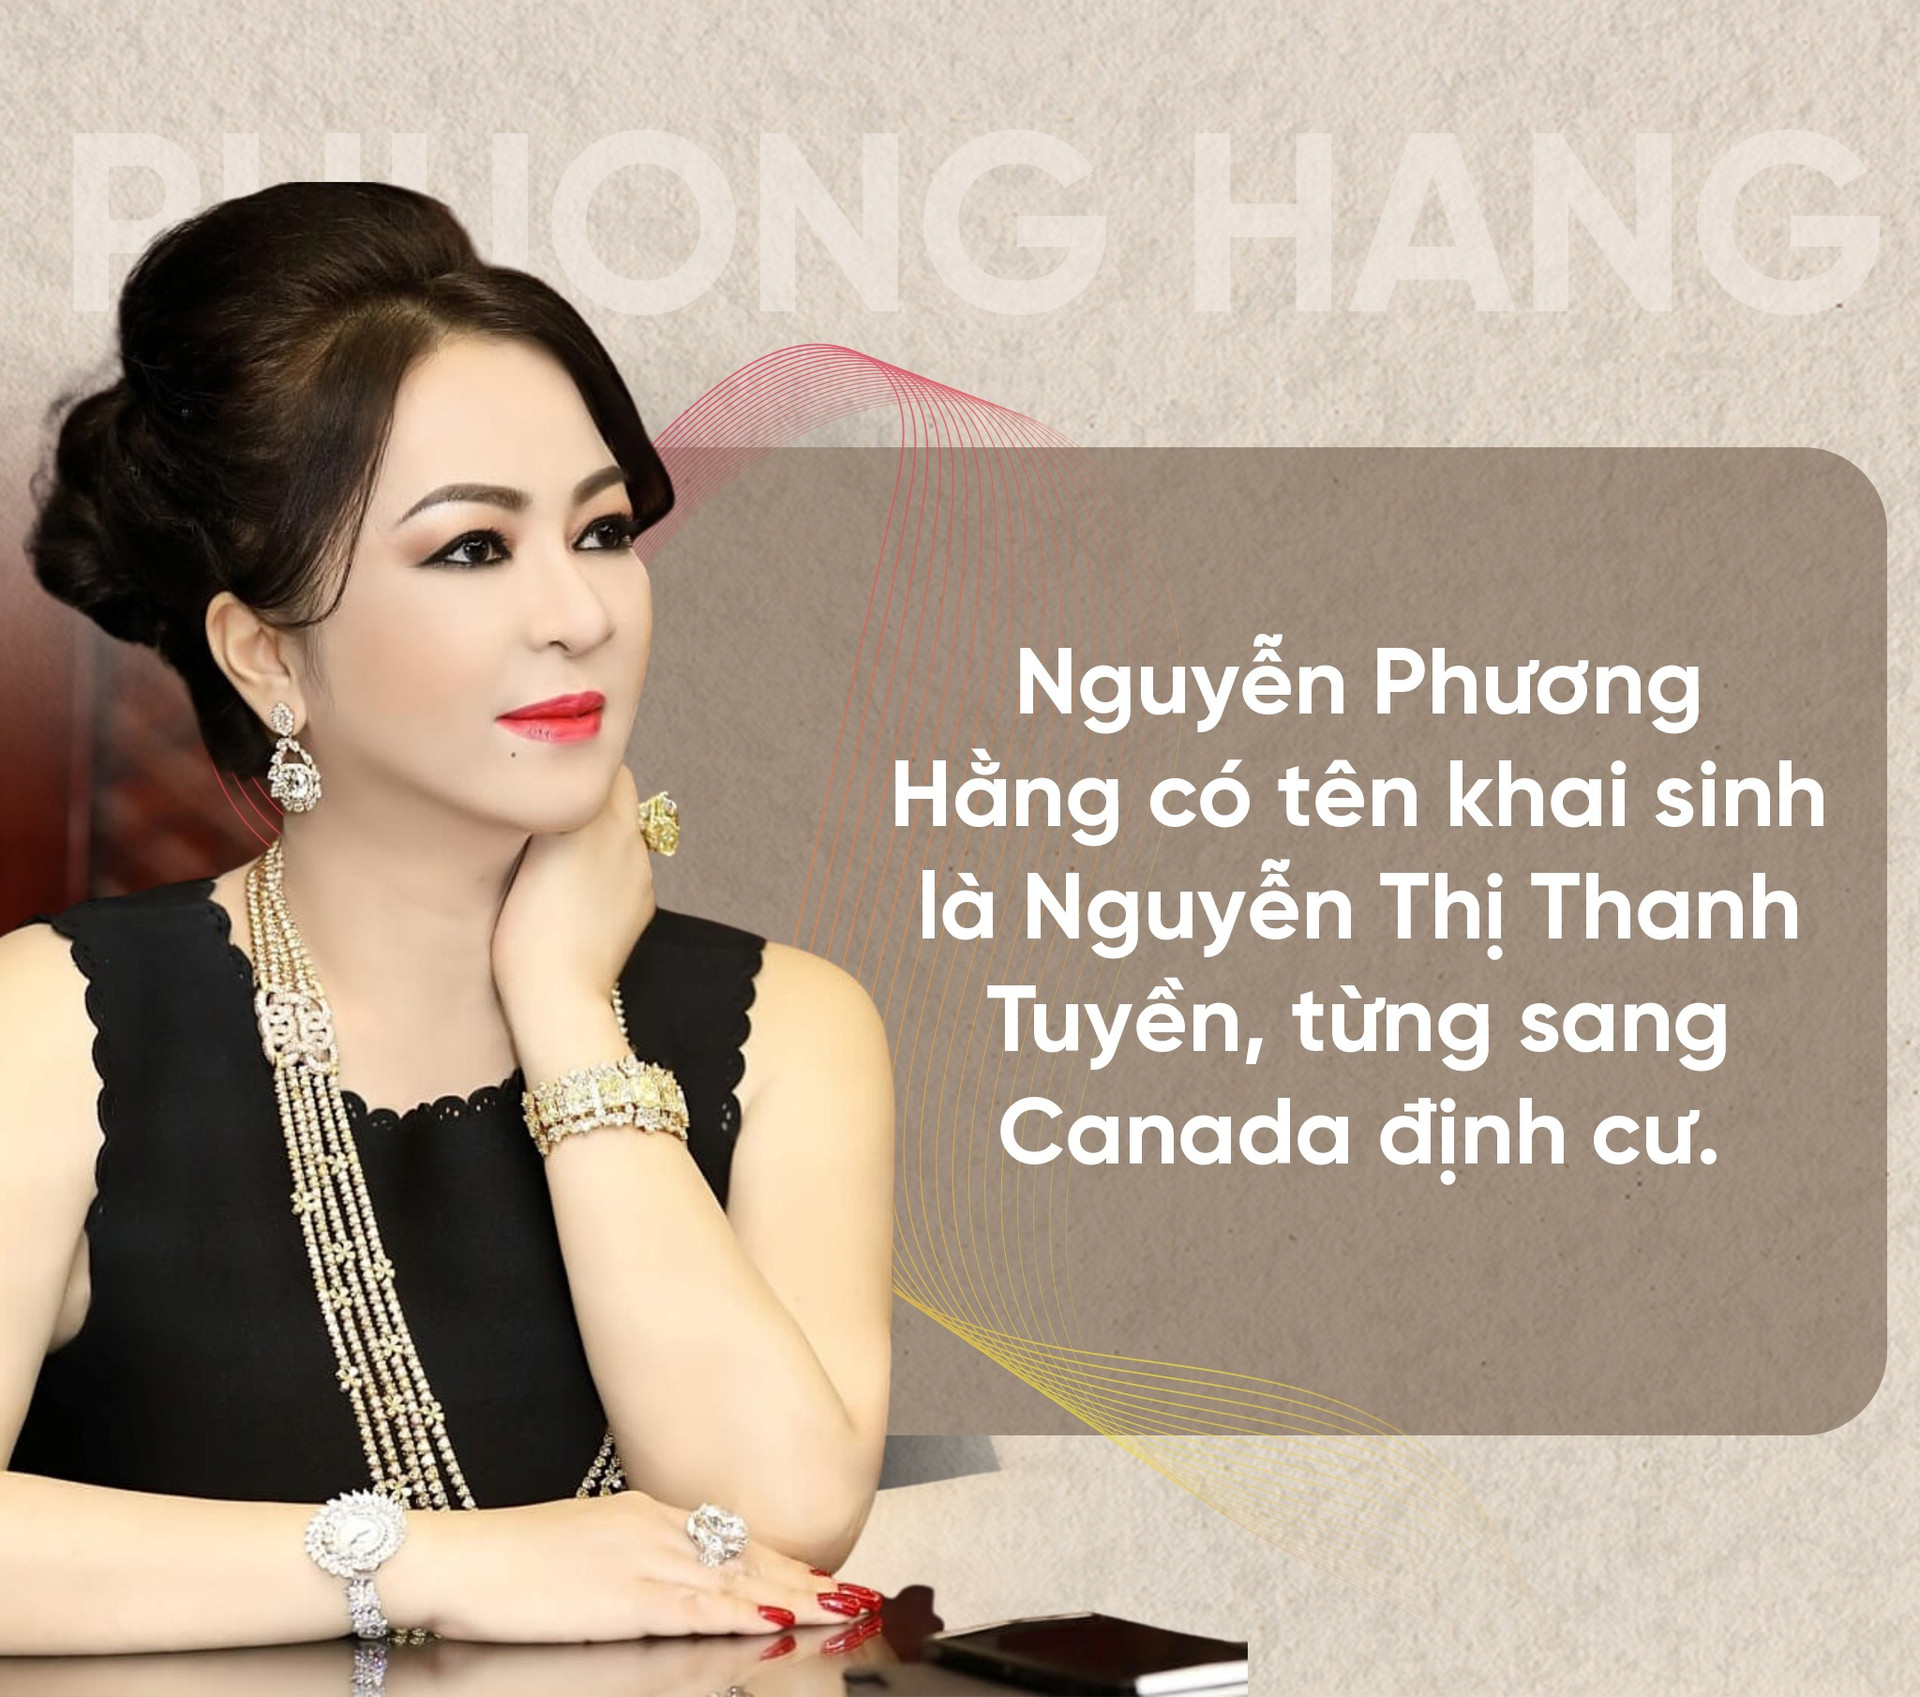 Một năm khuấy đảo MXH tới ngày vướng lao lý của bà Nguyễn Phương Hằng - 3